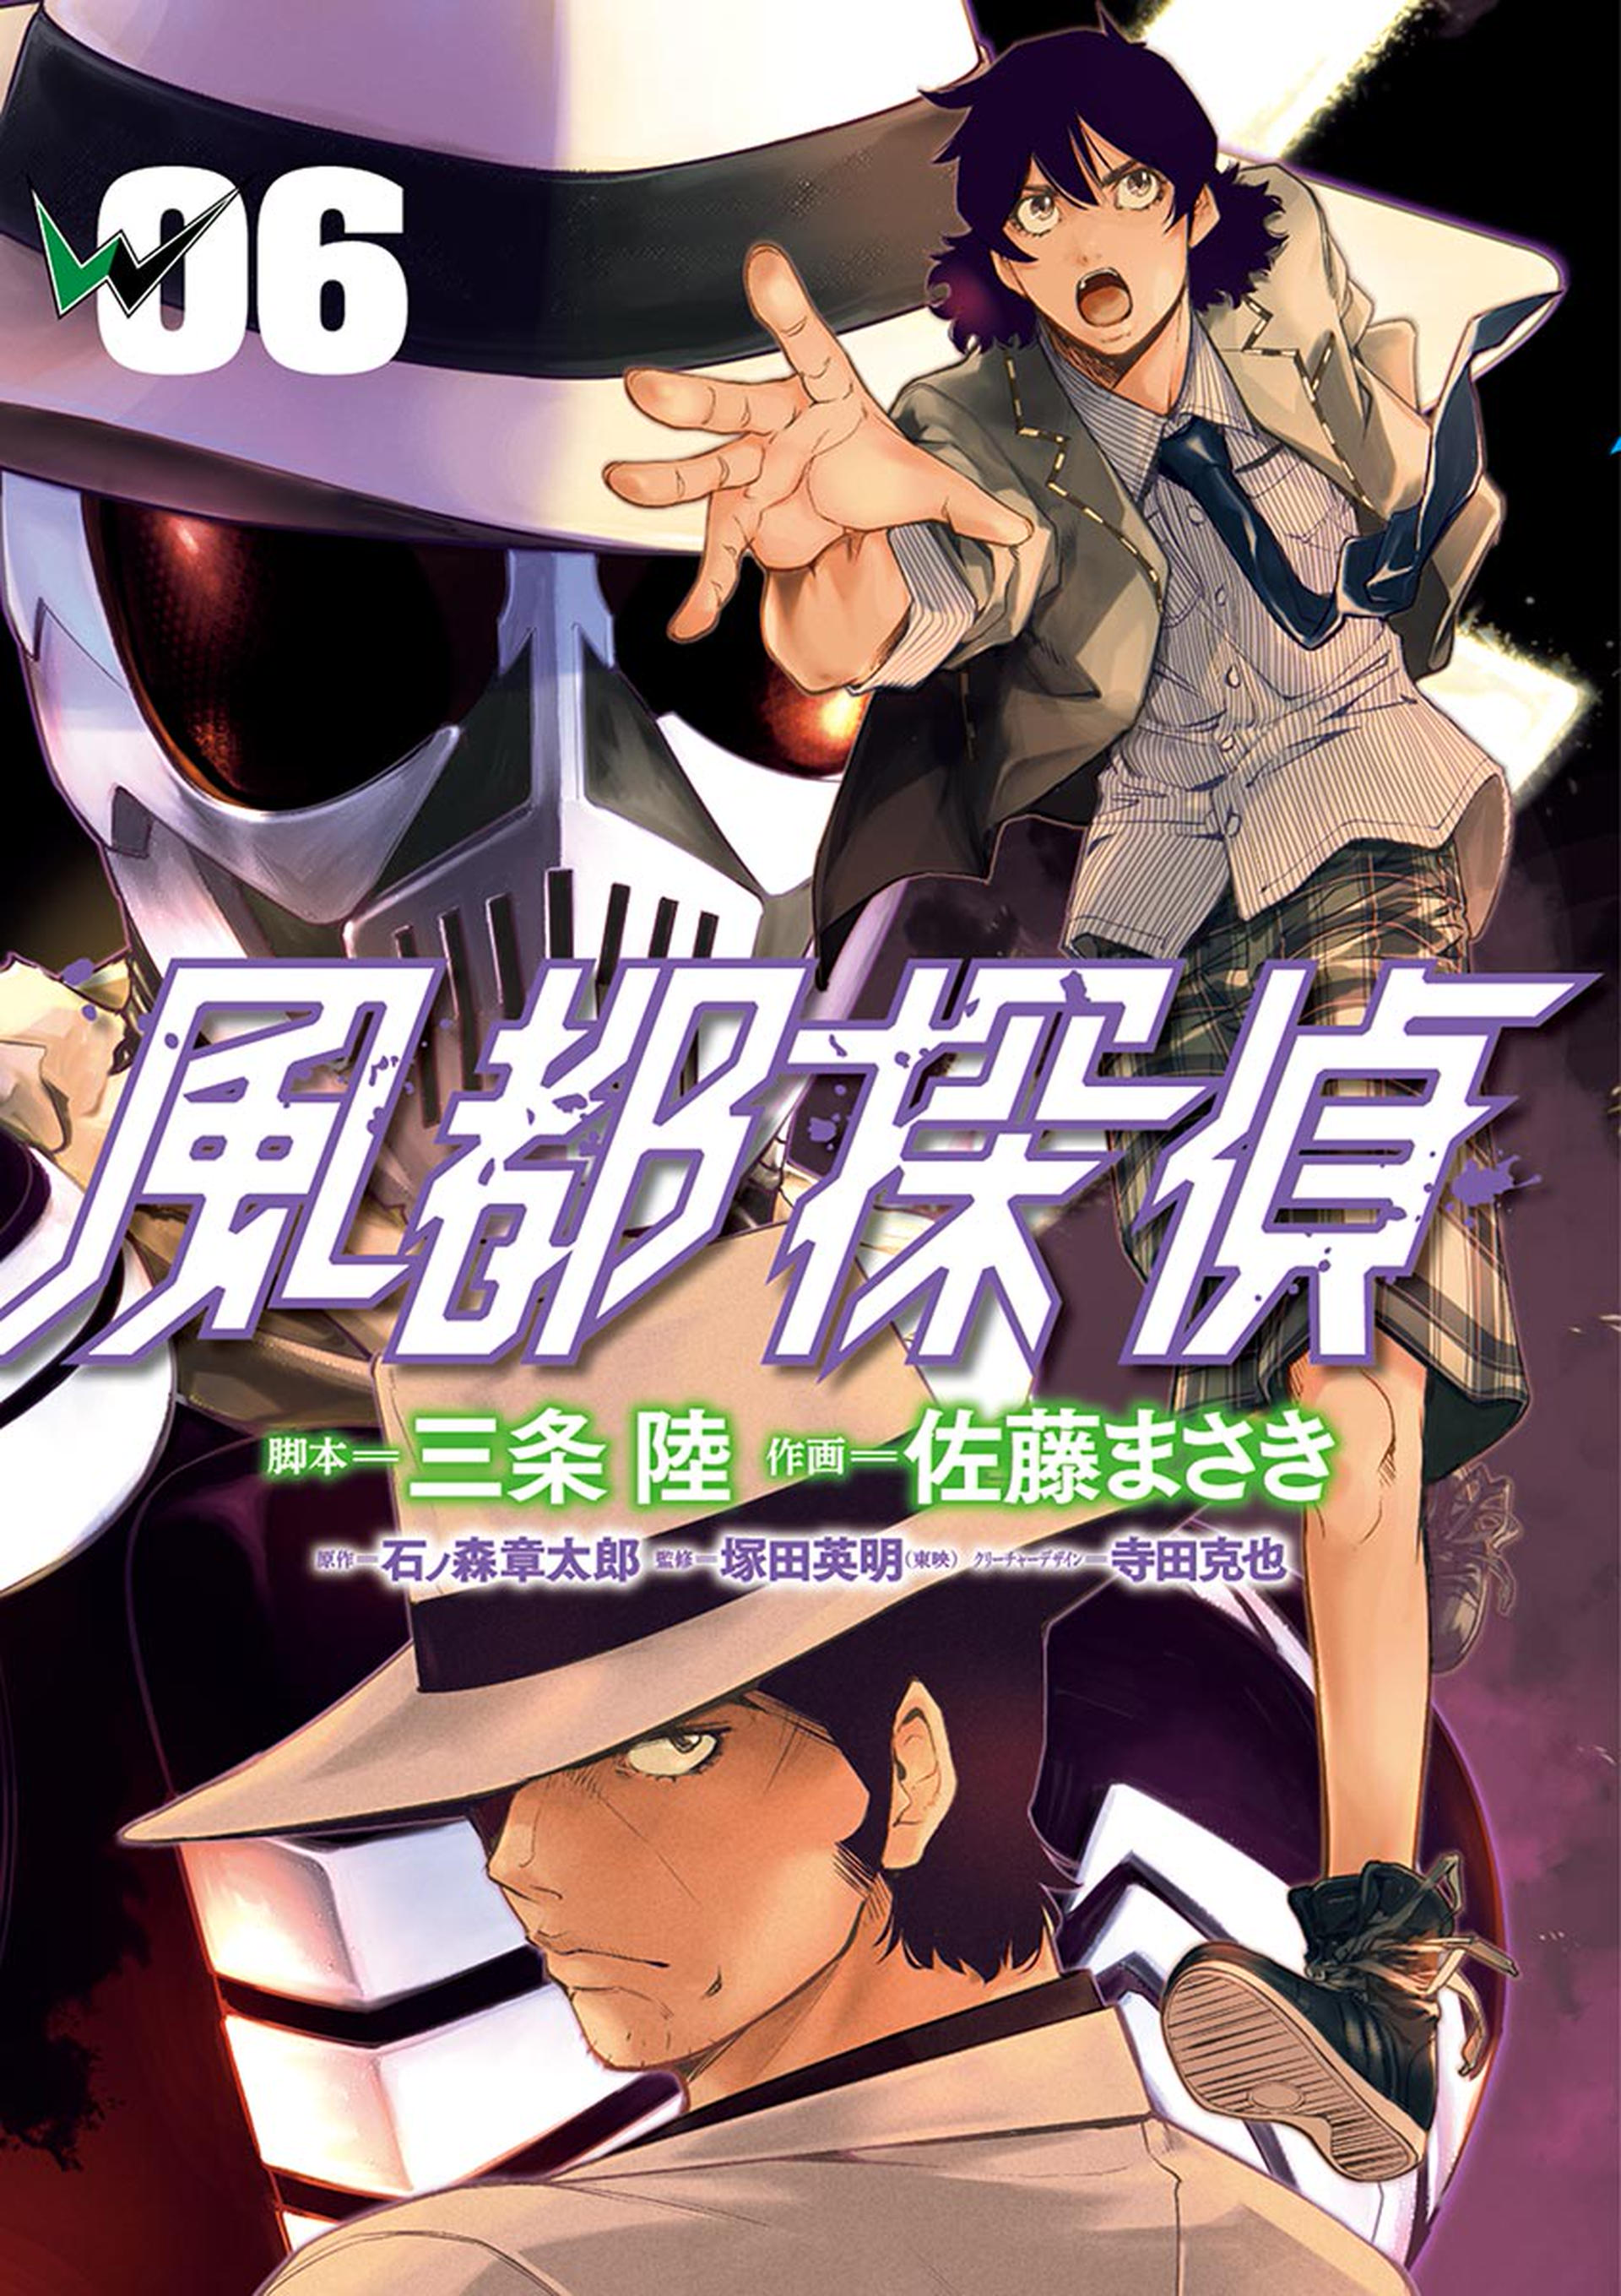 Kamen Rider W - Futo PI cover 10